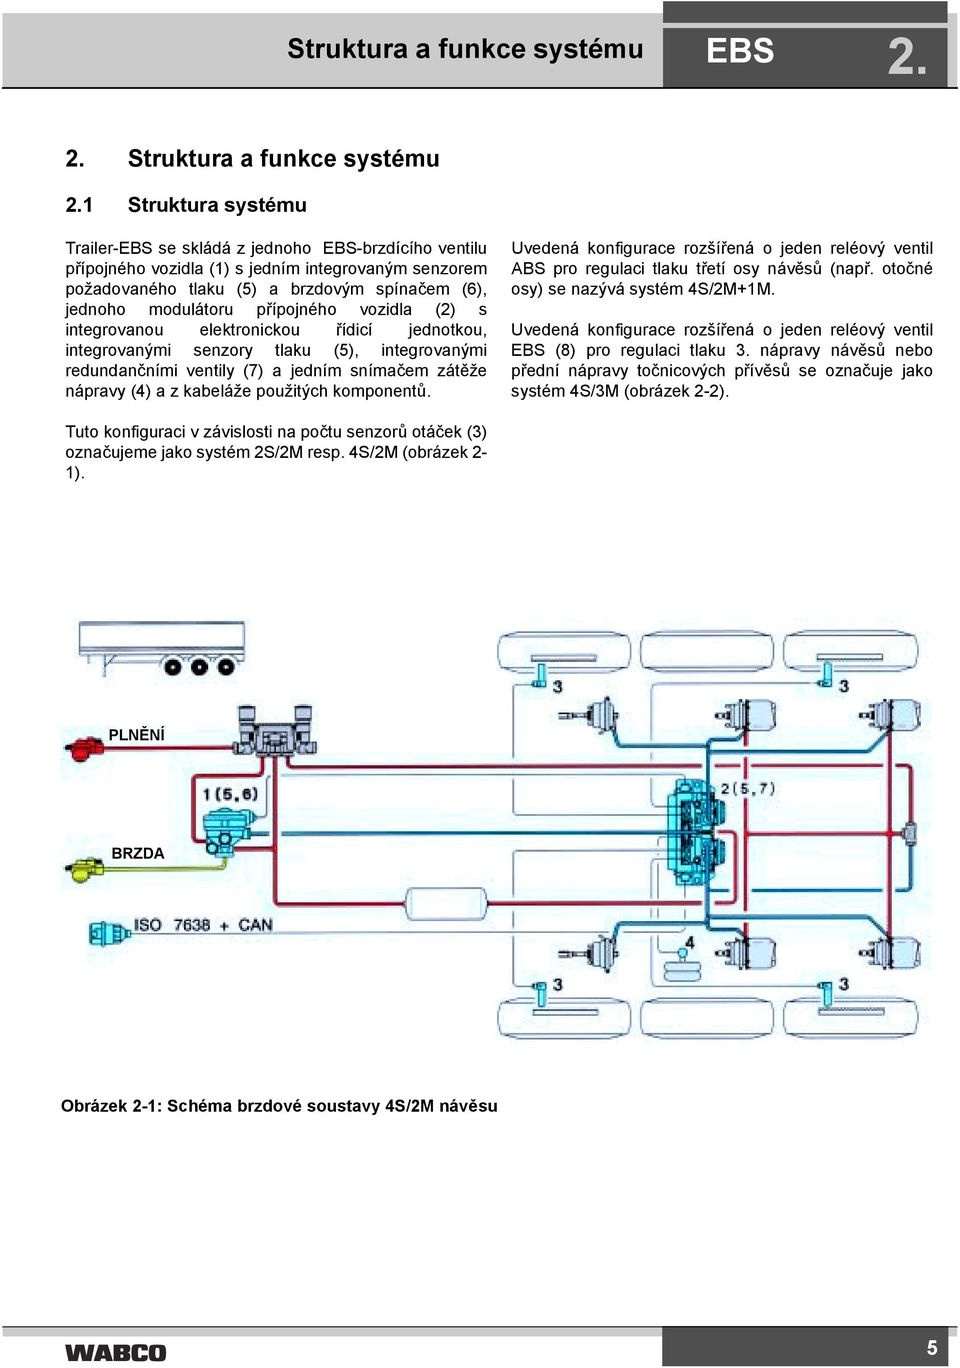 vozidla (2) s integrovanou elektronickou řídicí jednotkou, integrovanými senzory tlaku (5), integrovanými redundančními ventily (7) a jedním snímačem zátěže nápravy (4) a z kabeláže použitých